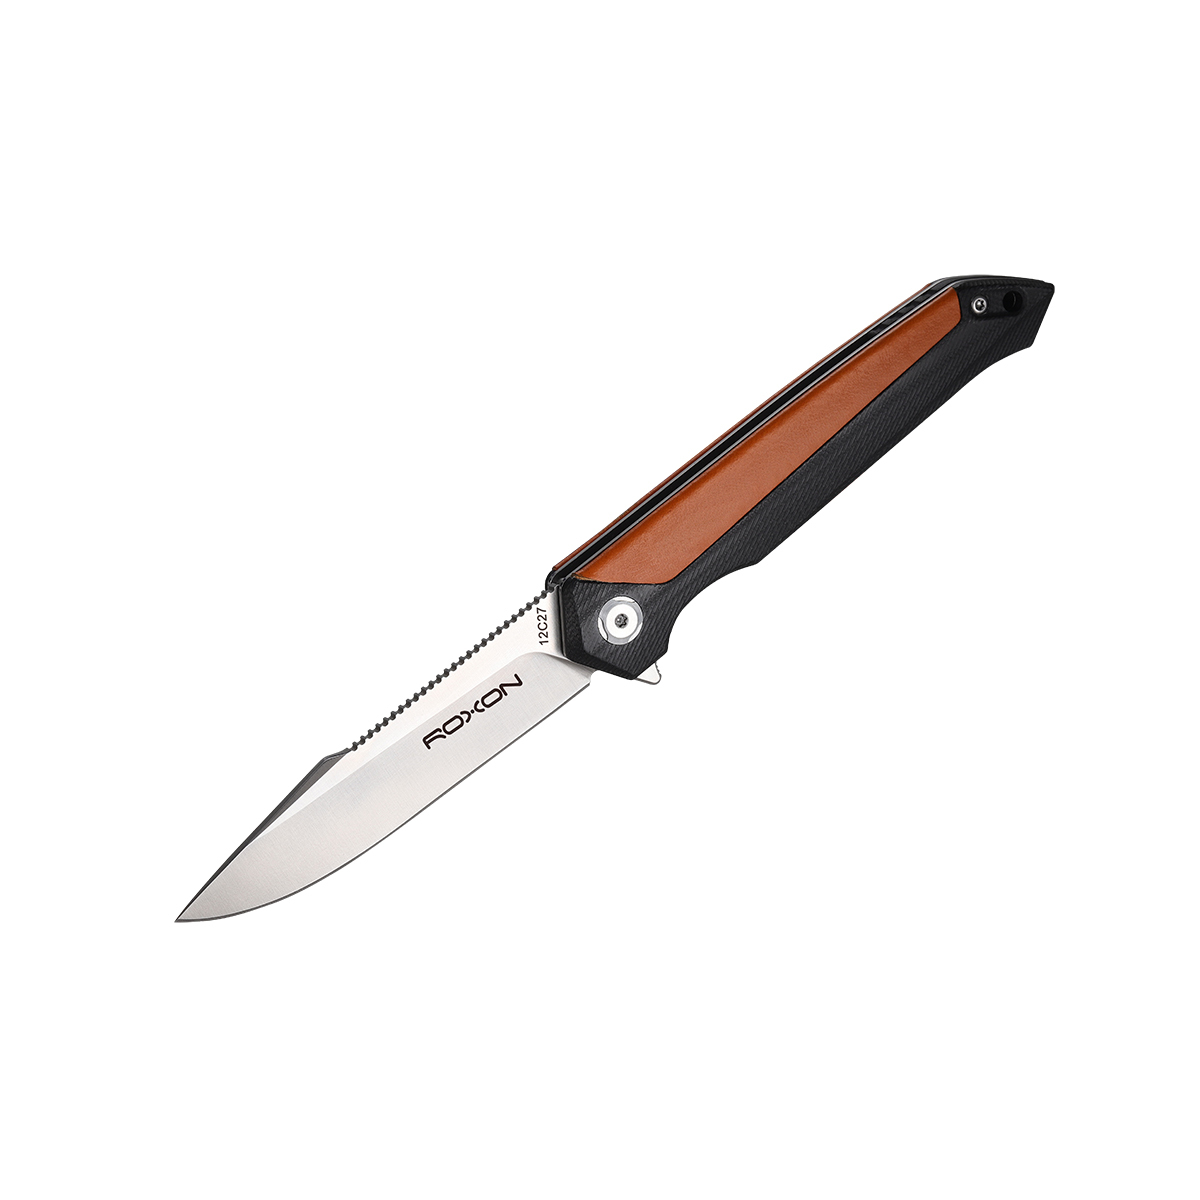 Складной нож Roxon K3, сталь sandvik 12C27, рукоять G10/кожа, коричневый